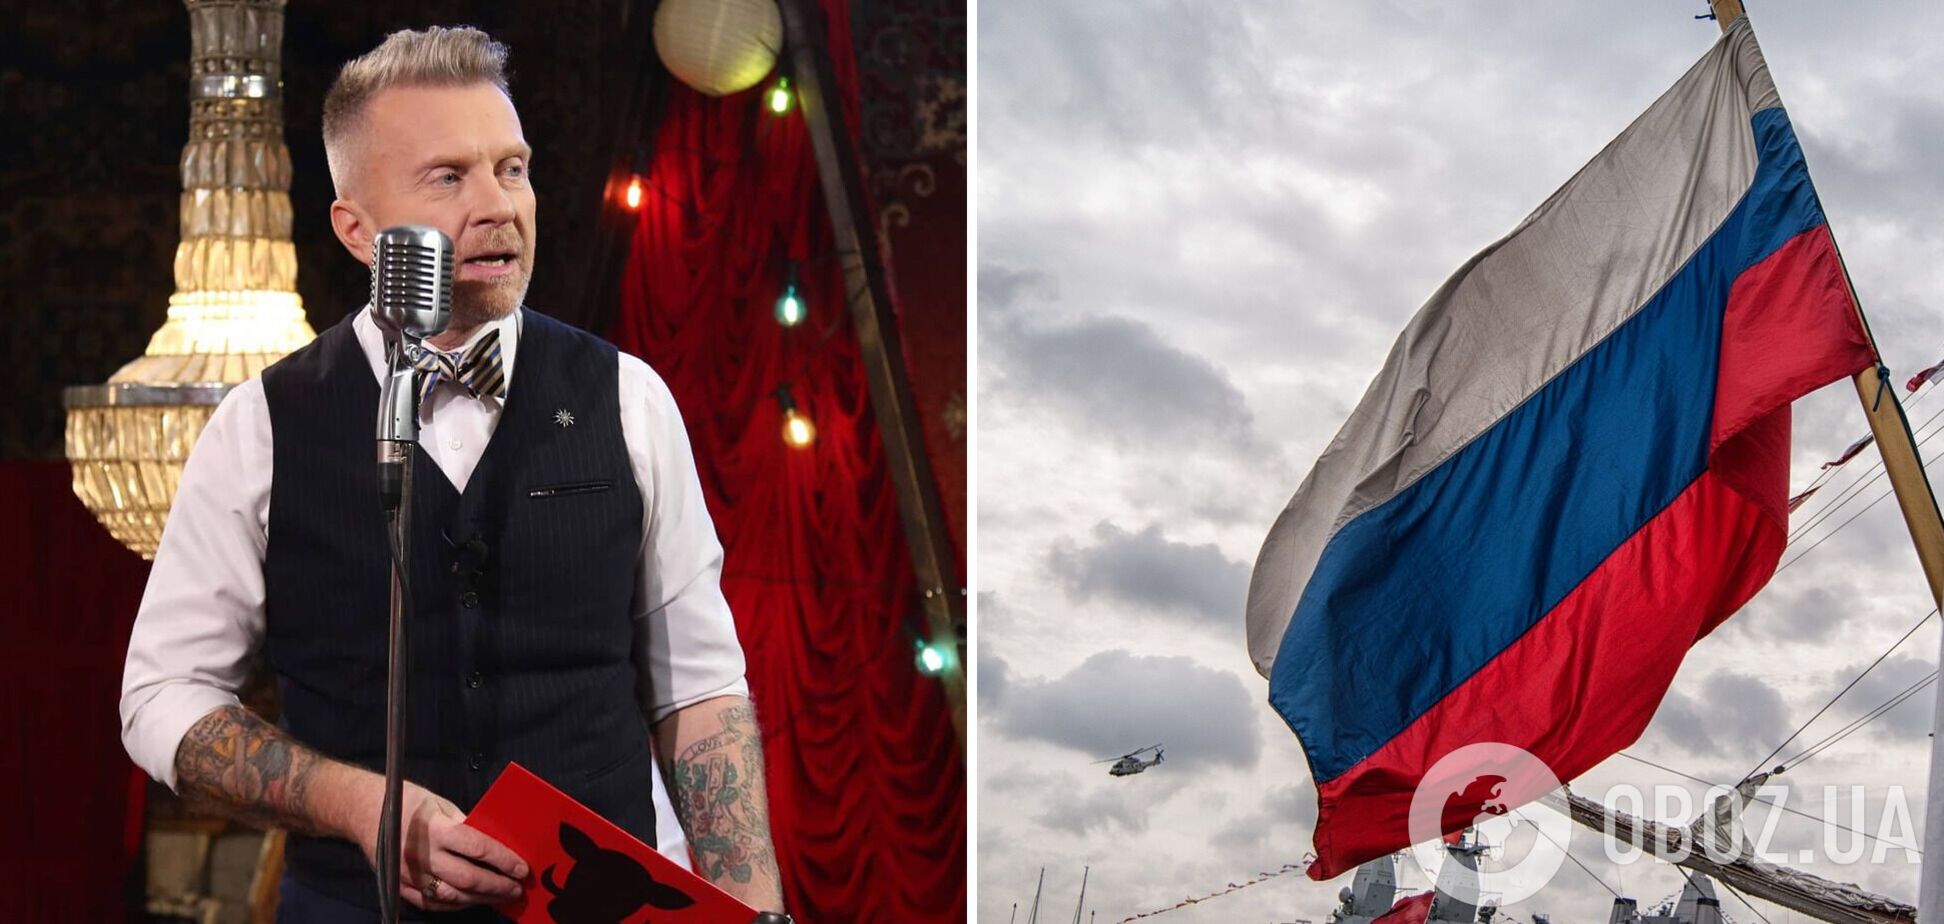 Антін Мухарський розповів про курйоз із росіянином на концерті в США: він віддав $3000 на ЗСУ